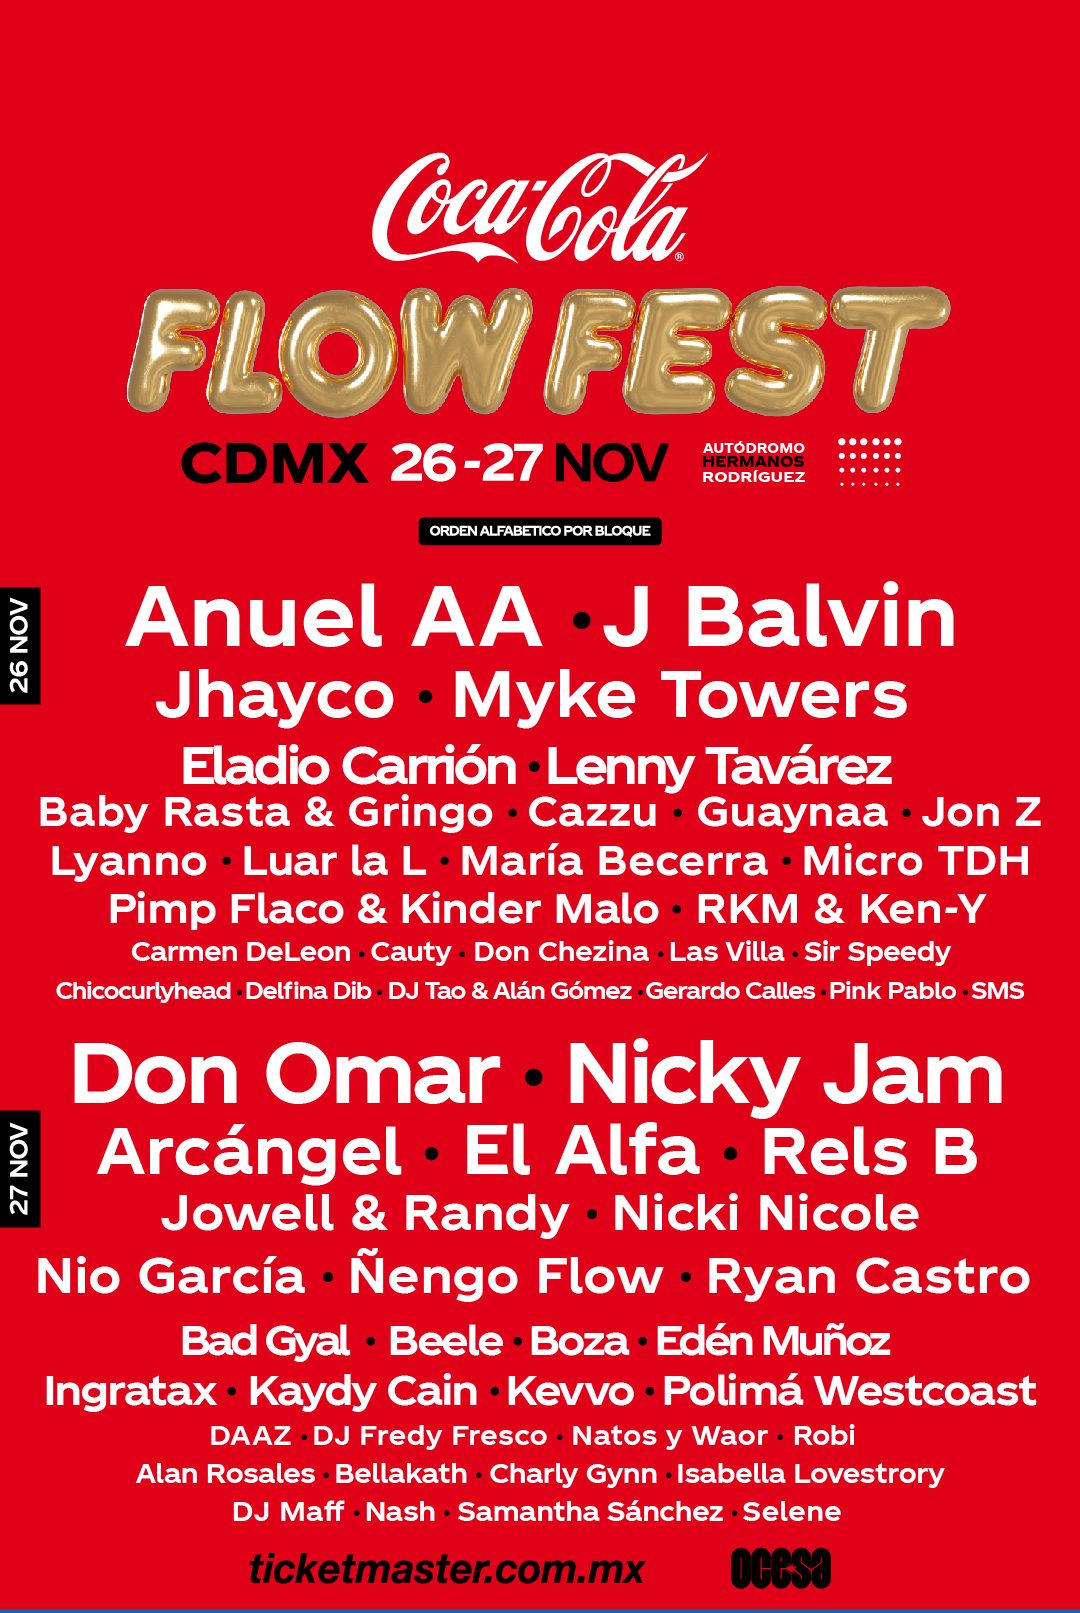 Flow Fest